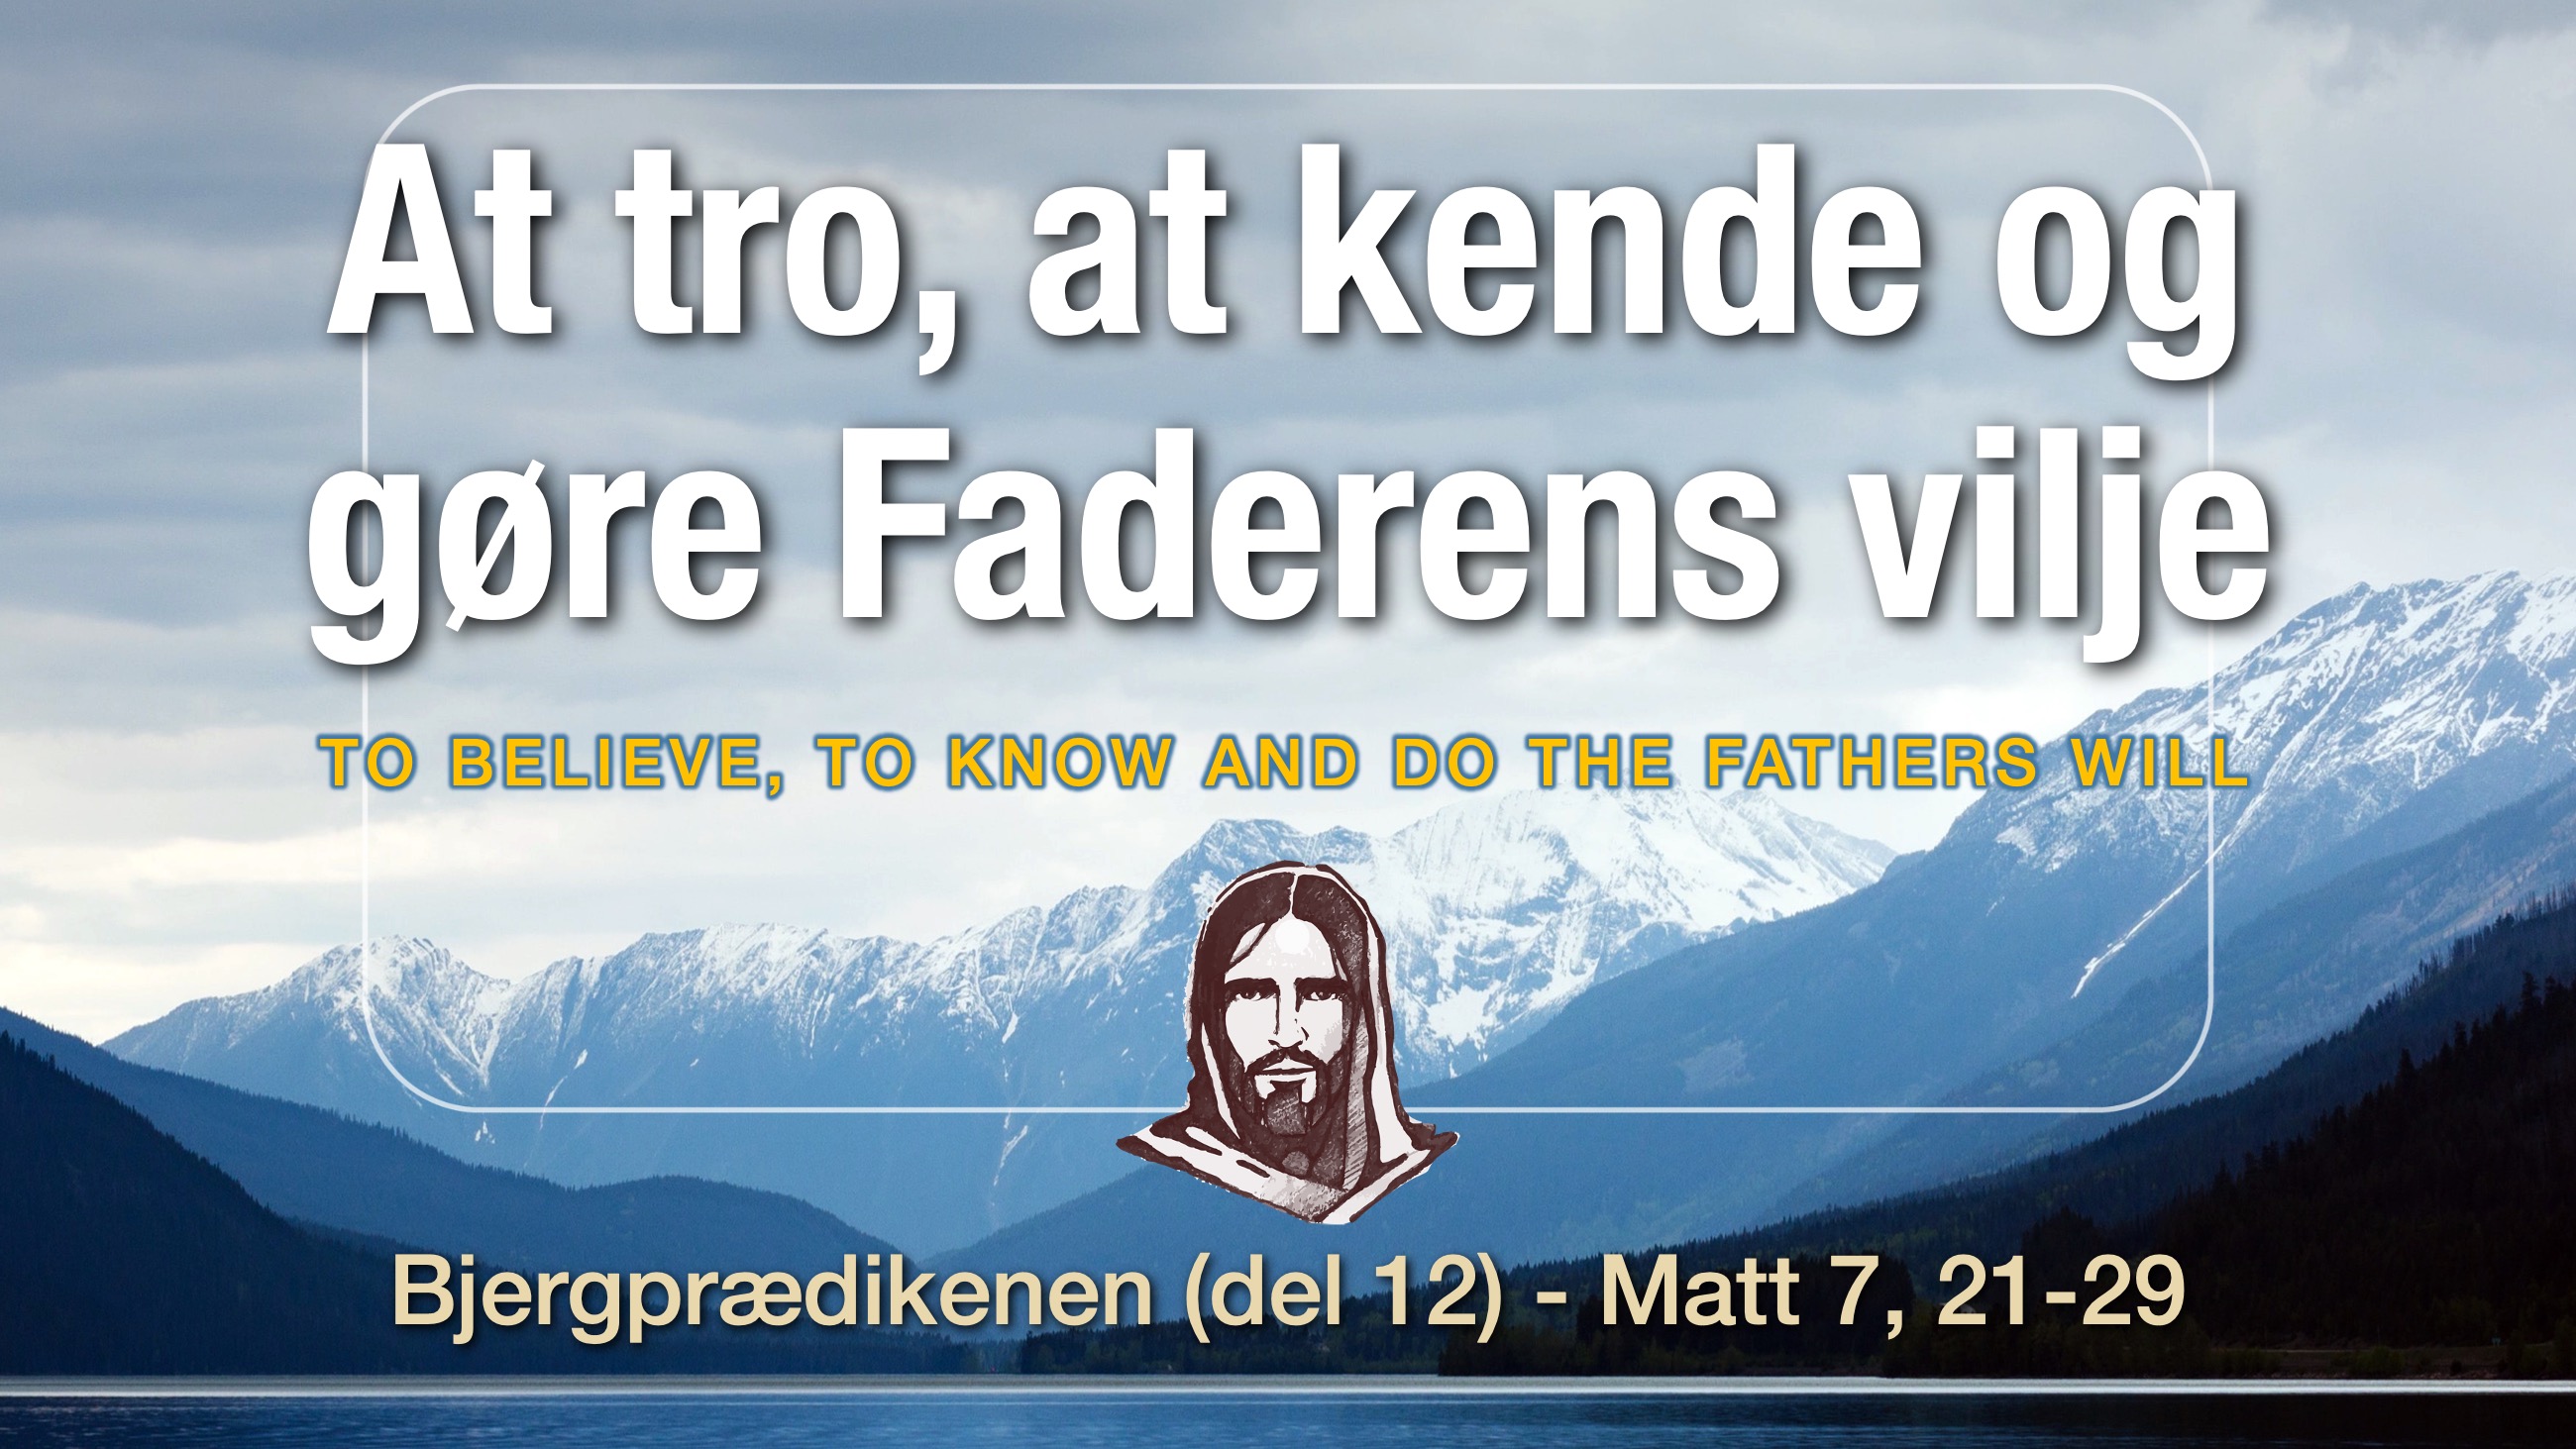 At tro, at kende og gøre Faderens vilje - Bjergprædikenen del 12 - Frank Ahlmann Esbjerg